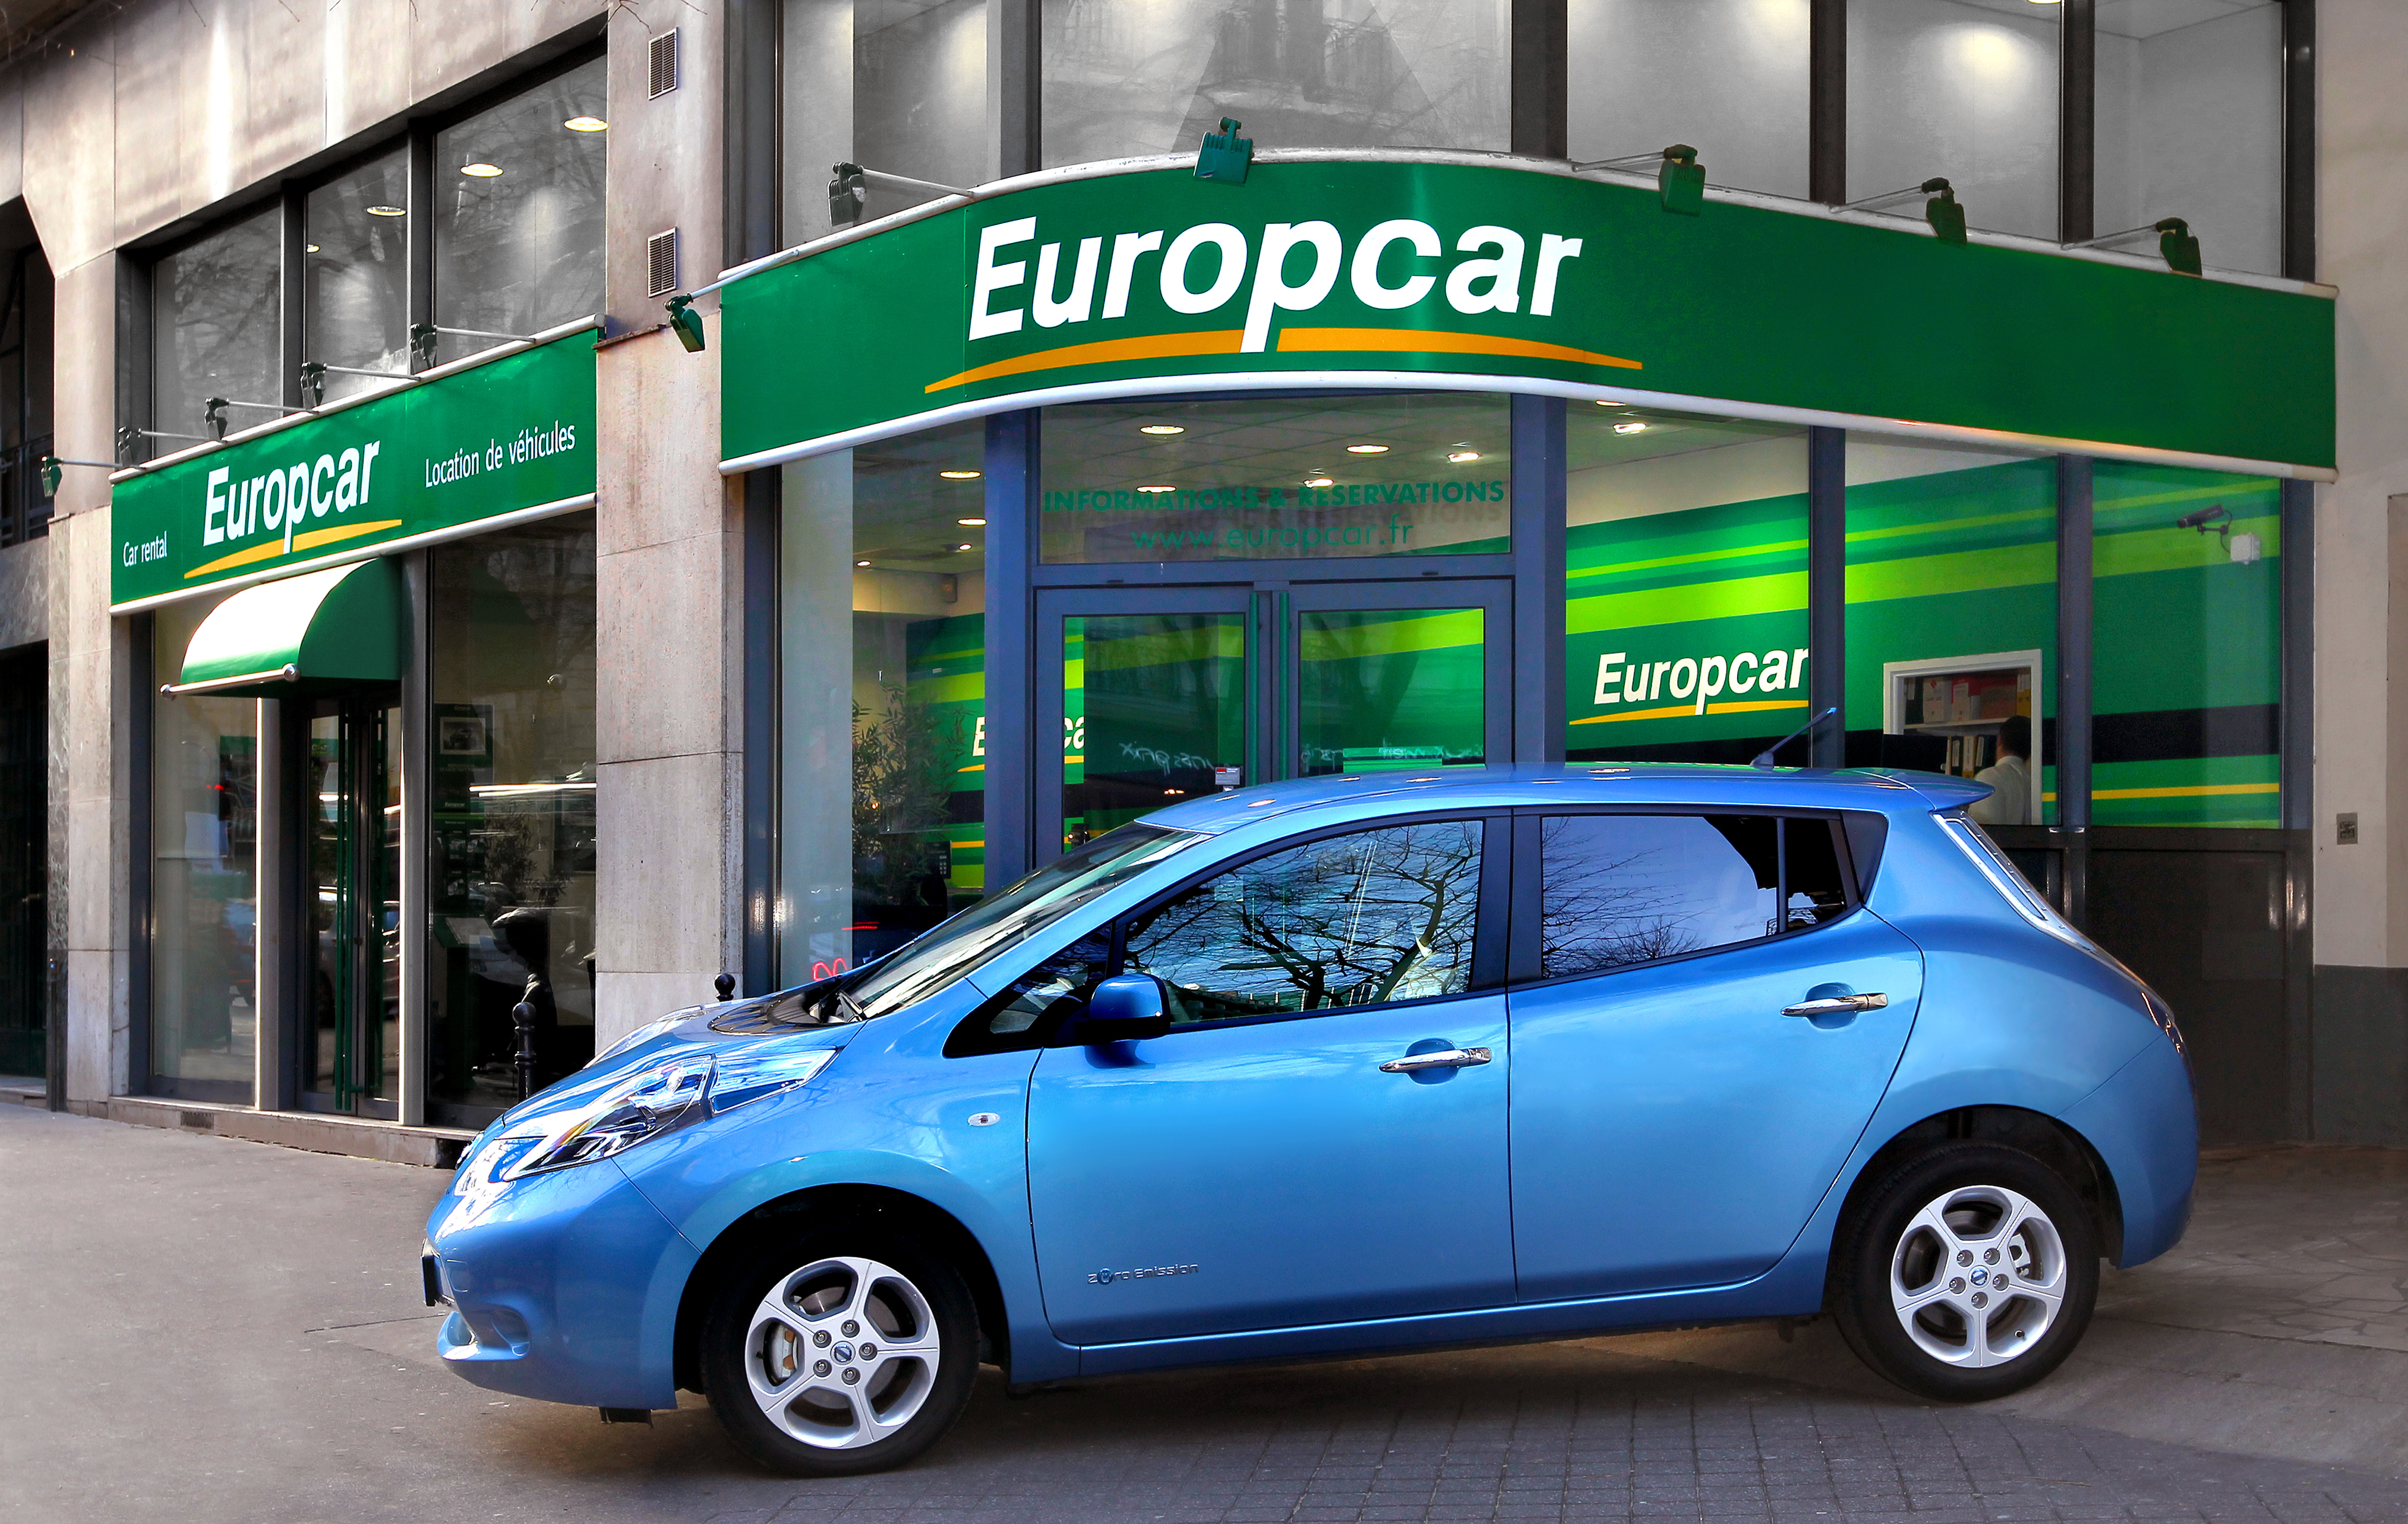 Аренда авто без водителя. Еврокар. Europcar машины. Прокатные автомобили. Европейские компании автомобилей.